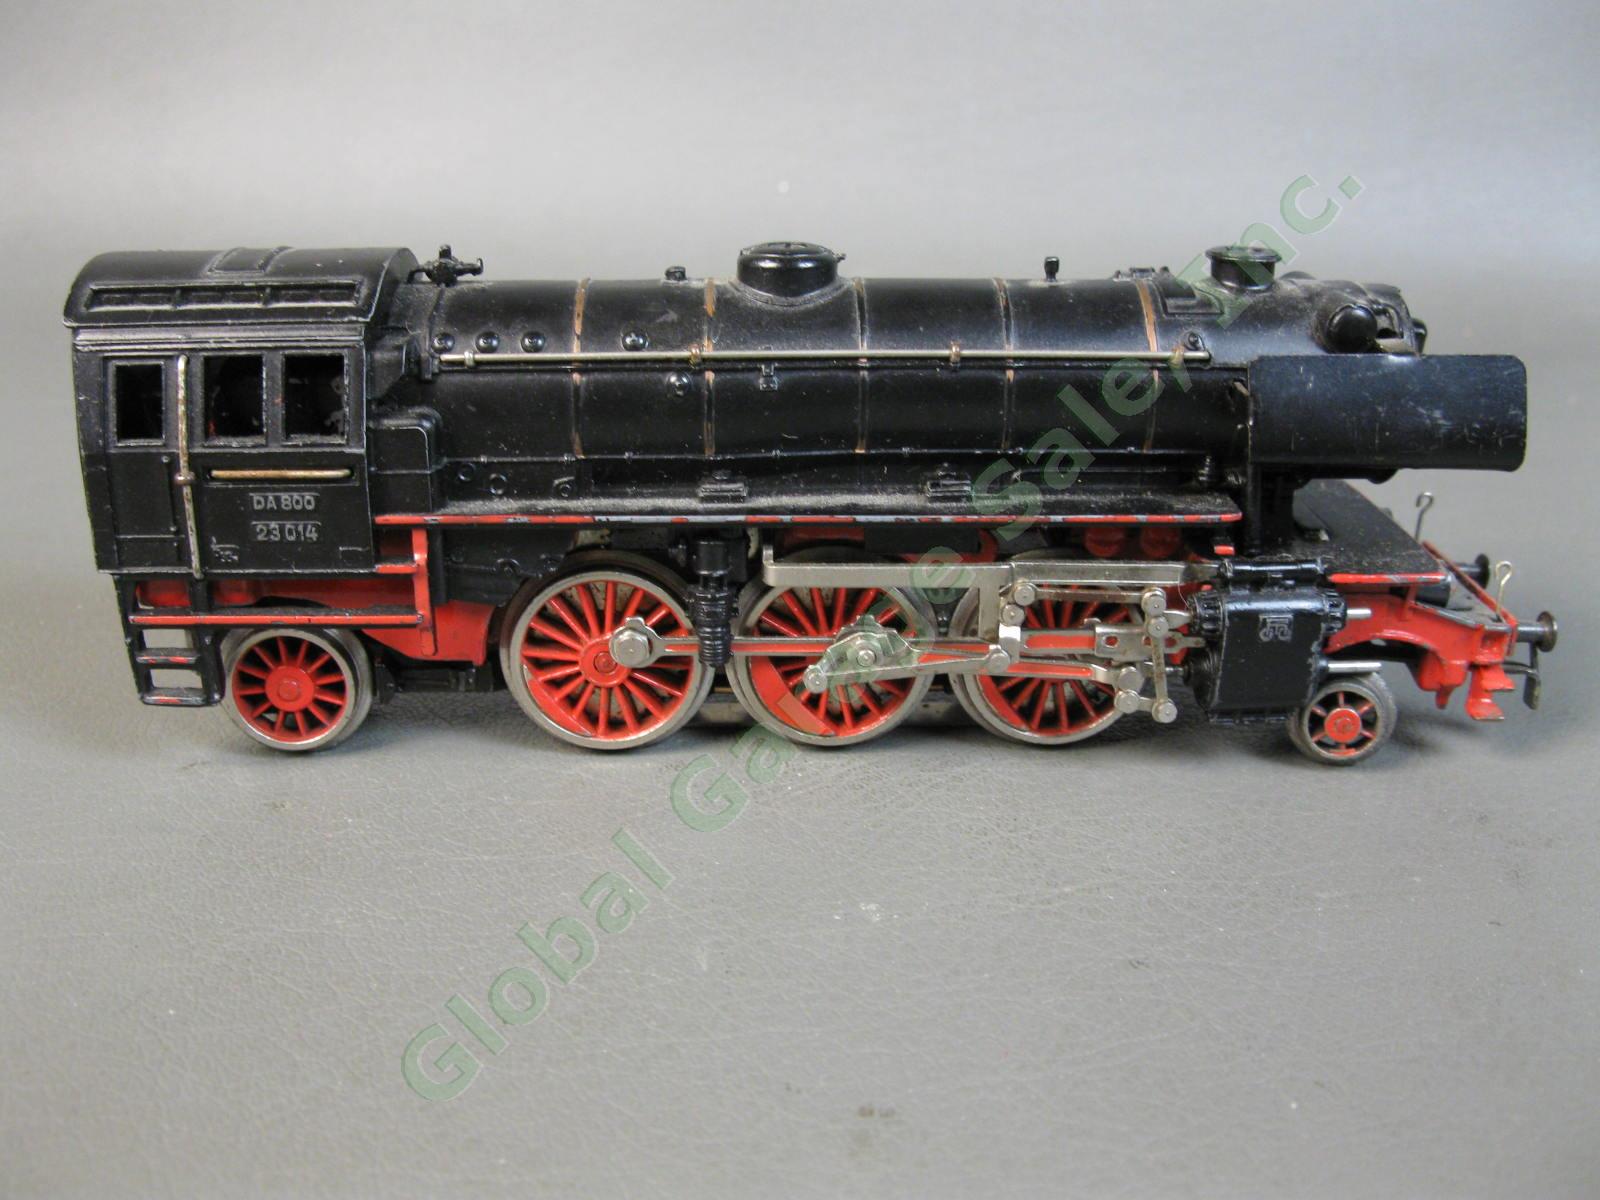 VINTAGE Marklin DA 800 23014 2-6-2 Steam Locomotive Train Engine Tender Set NR 3